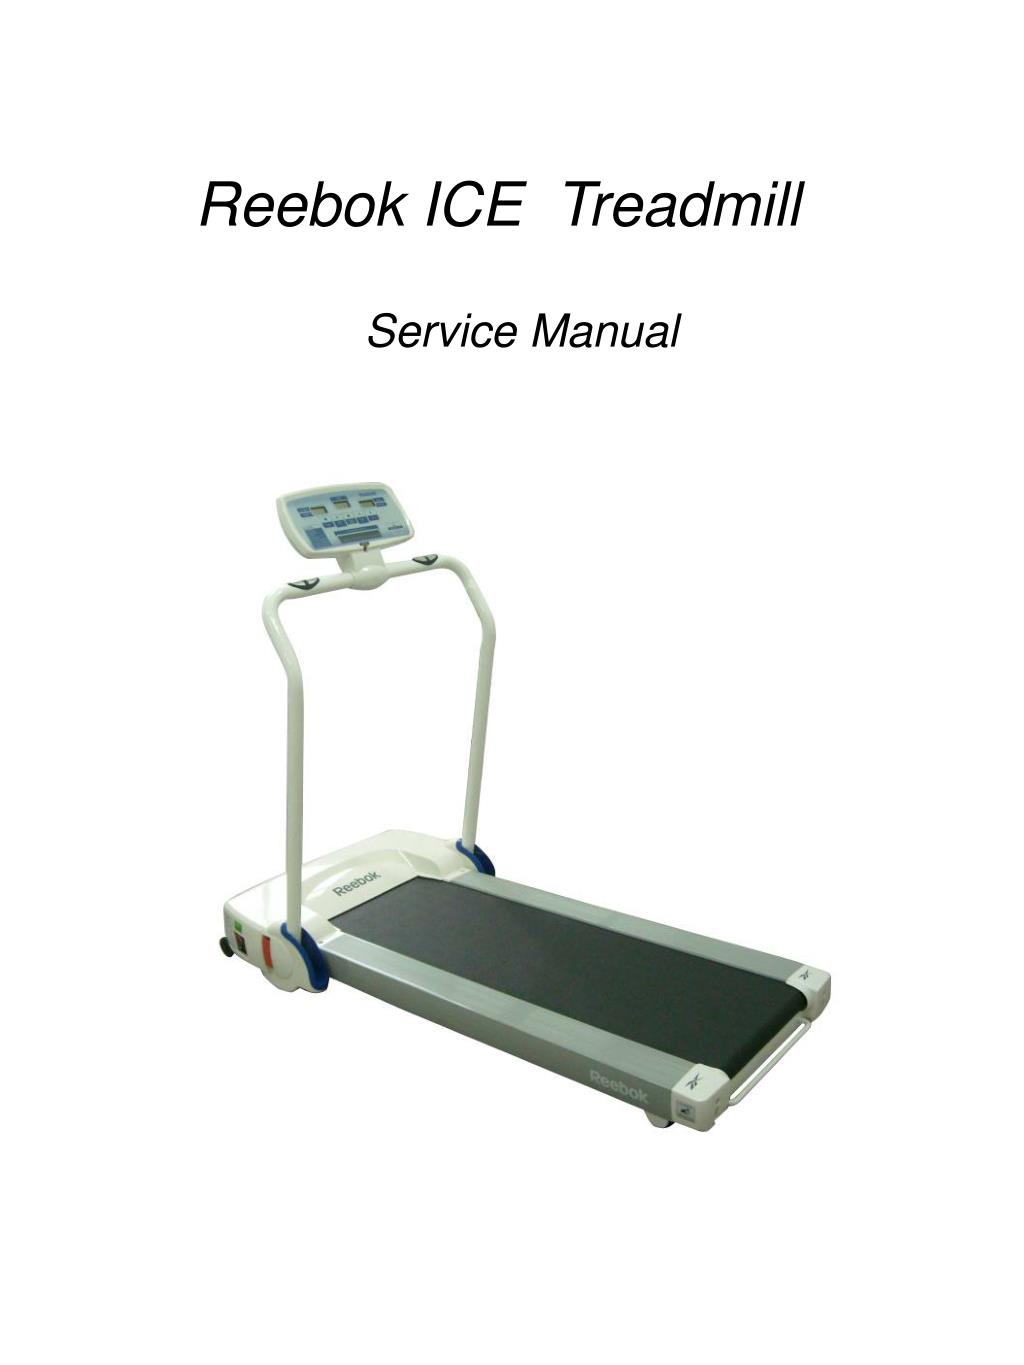 PPT - Reebok ICE Treadmill PowerPoint 